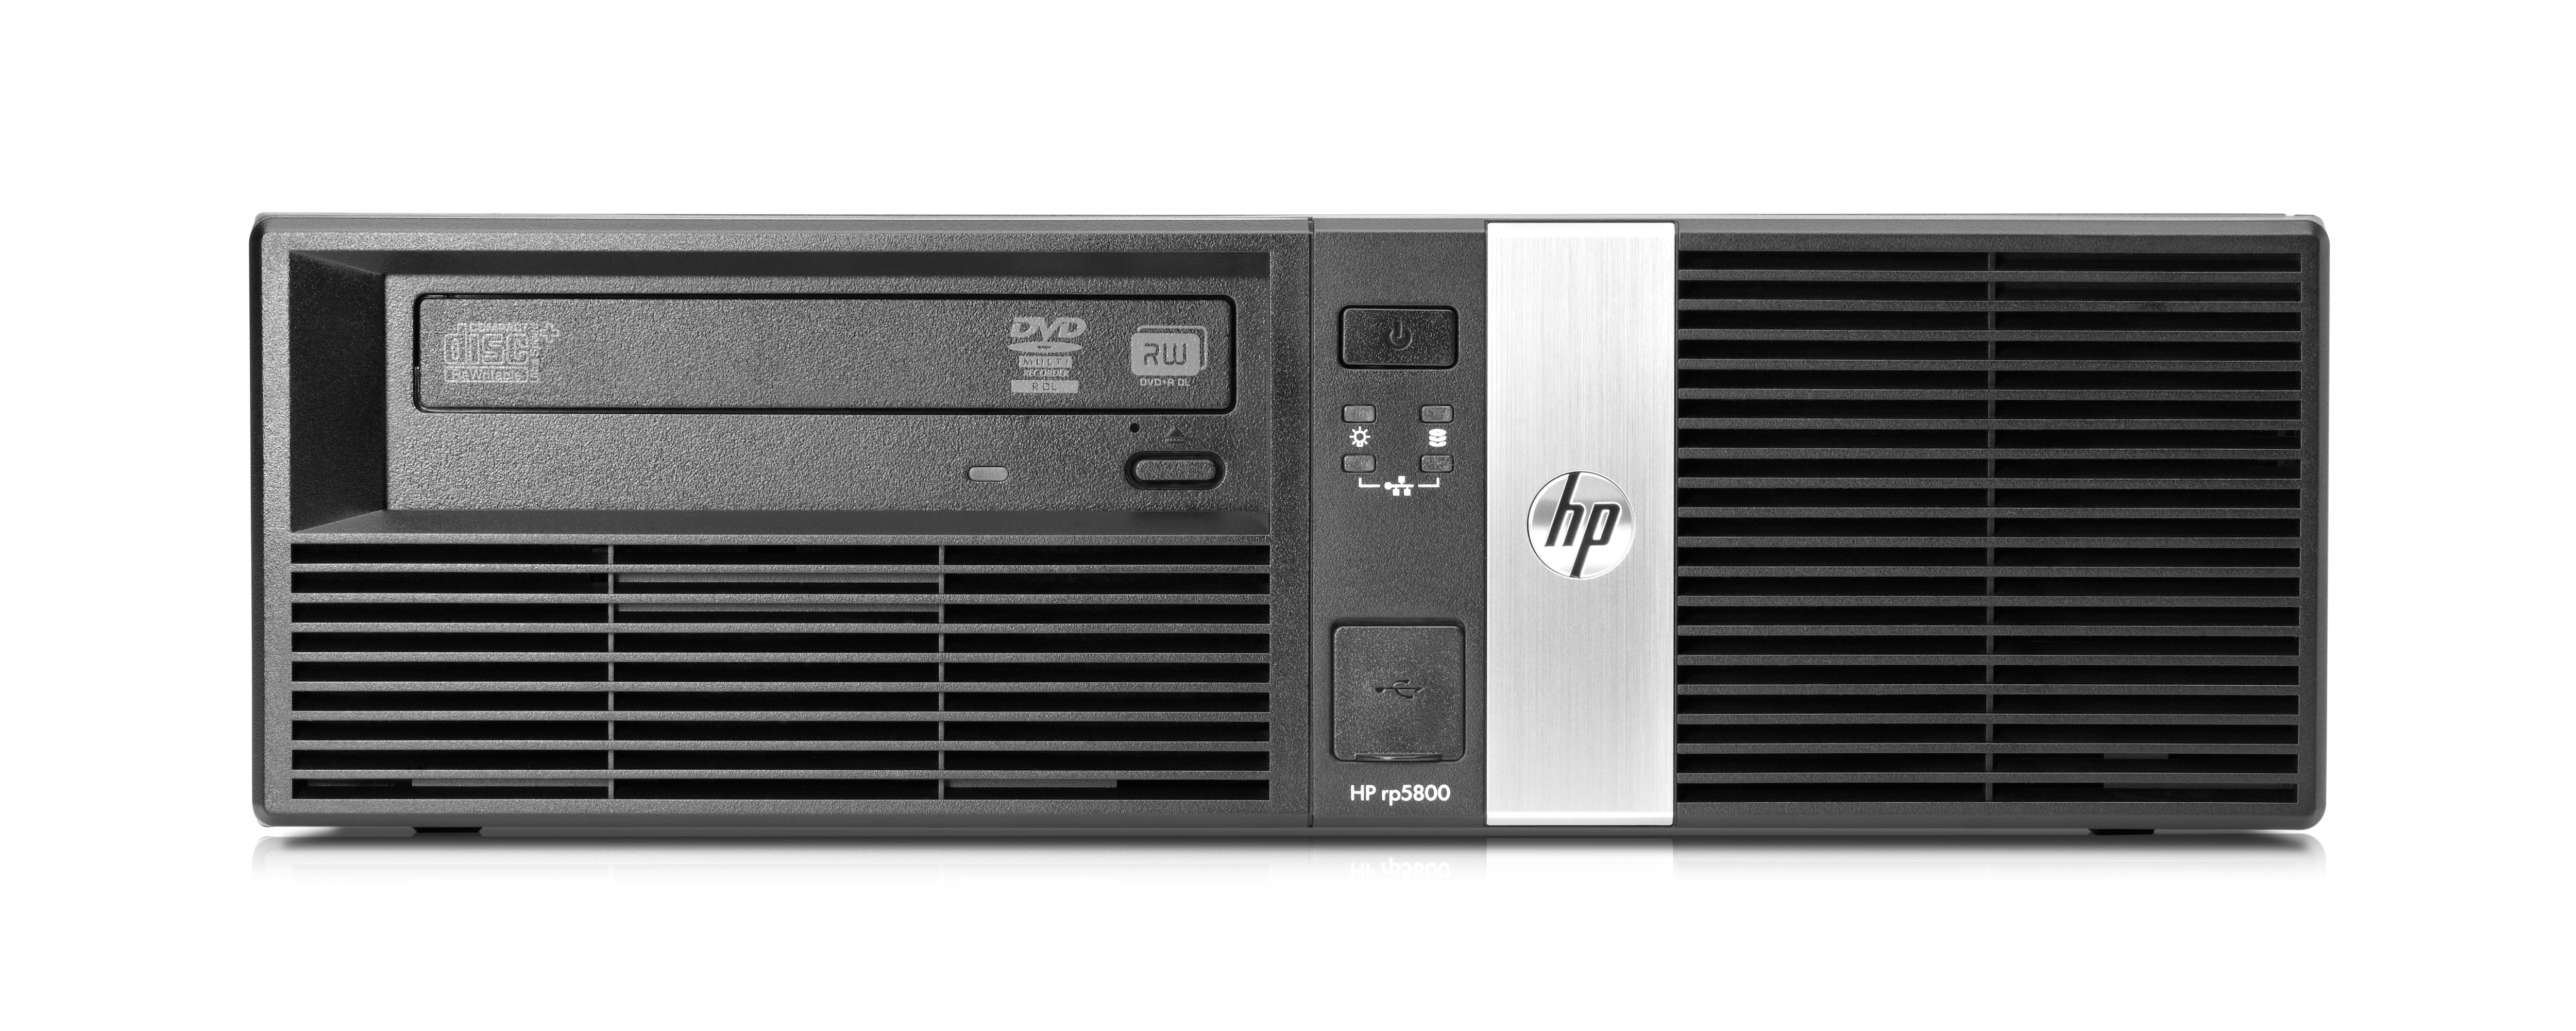 HP rp5800